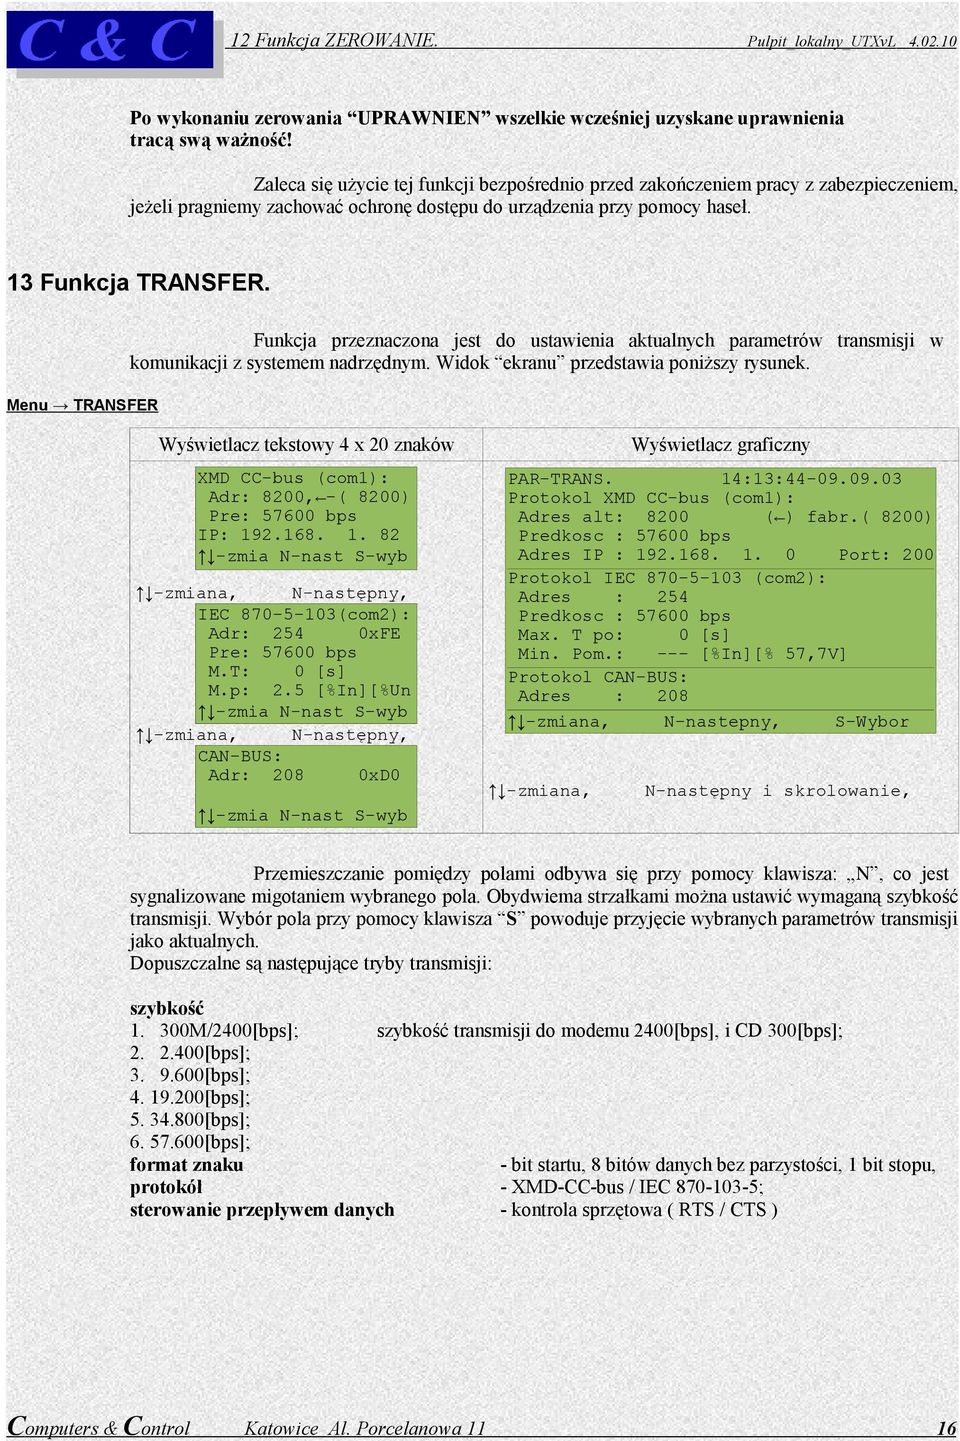 Menu TRANSFER Funkcja przeznaczona jest do ustawienia aktualnych parametrów transmisji w komunikacji z systemem nadrzędnym. Widok ekranu przedstawia poniższy rysunek.